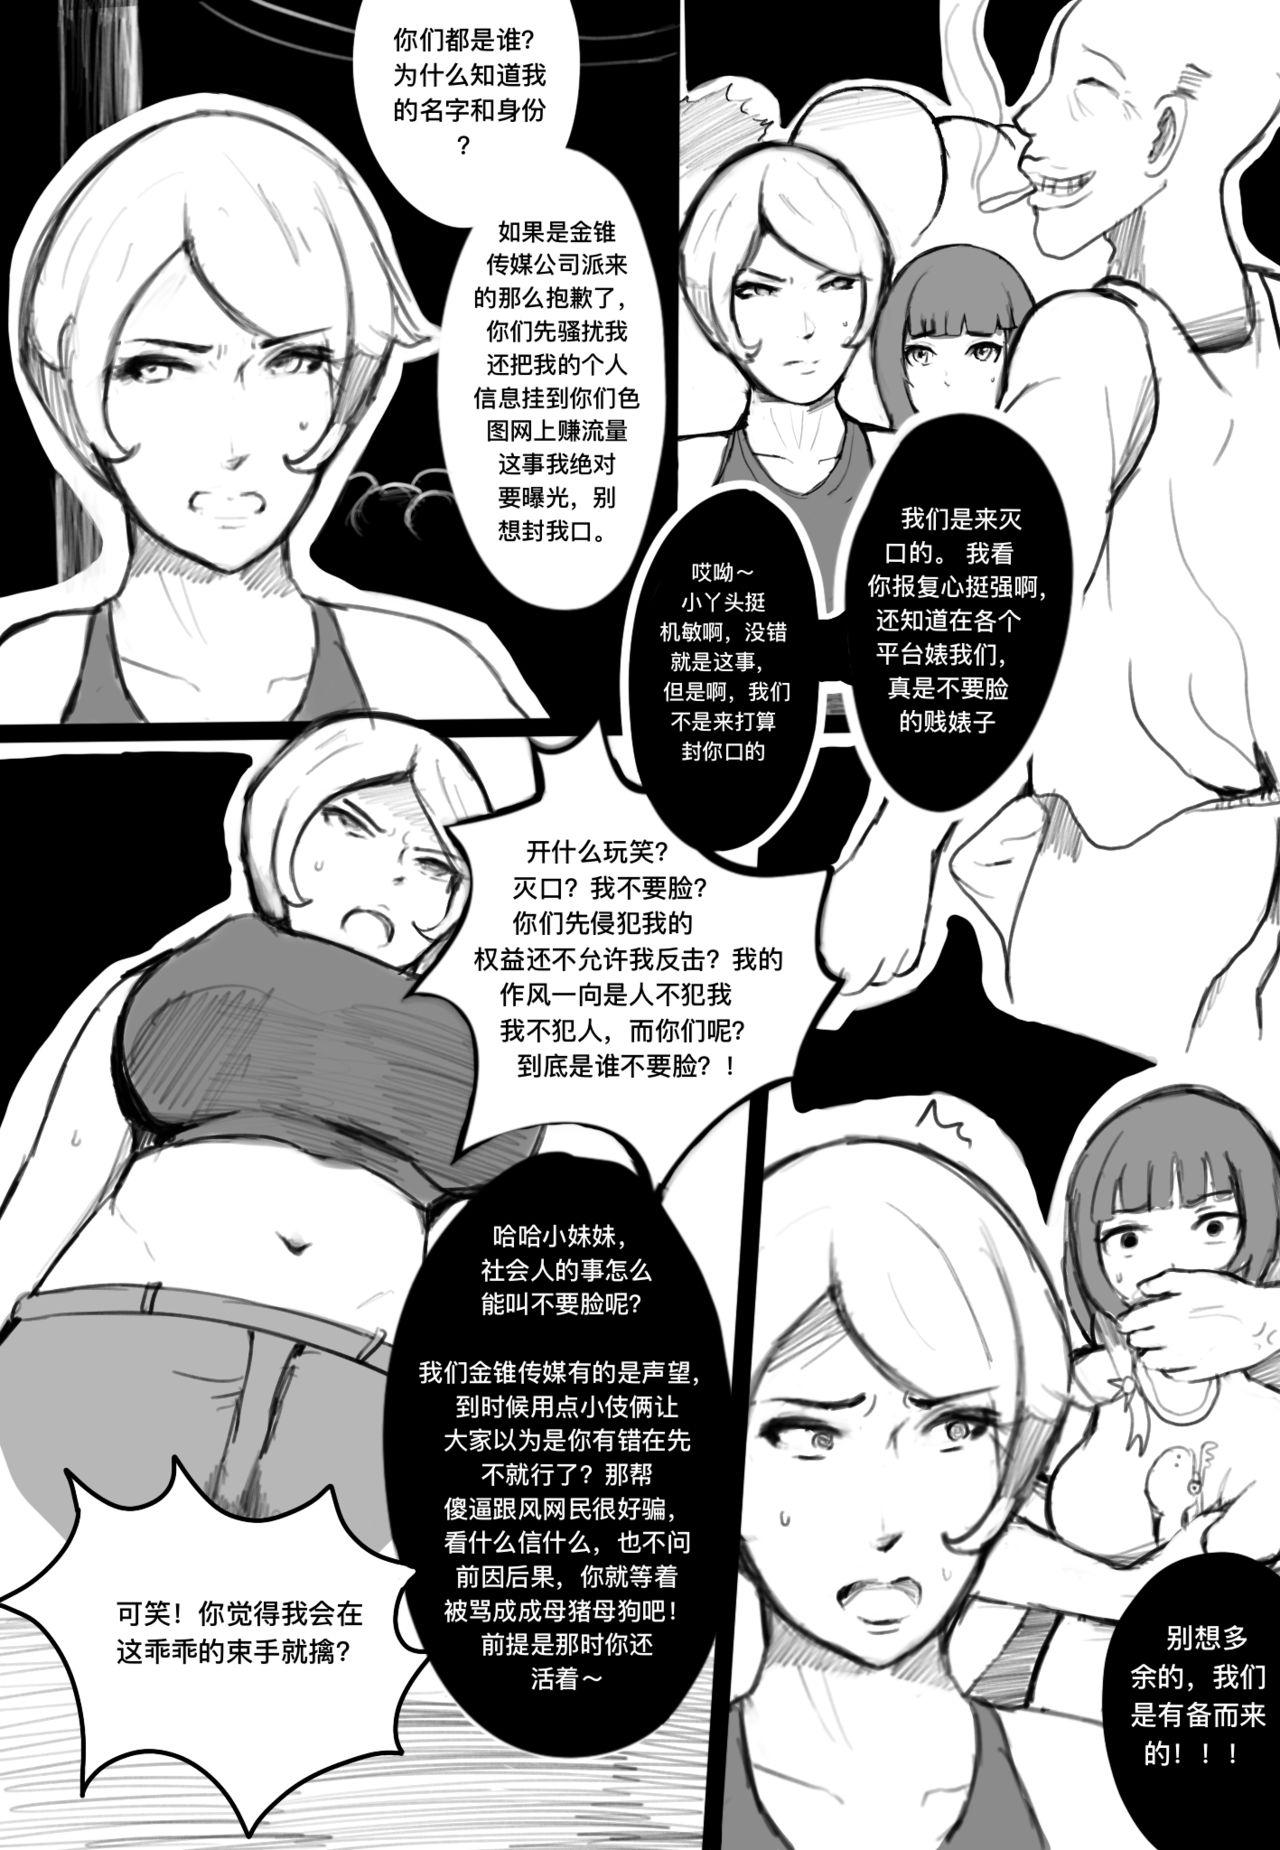 Curvy 奸杀组拉 - Original Porn - Page 2